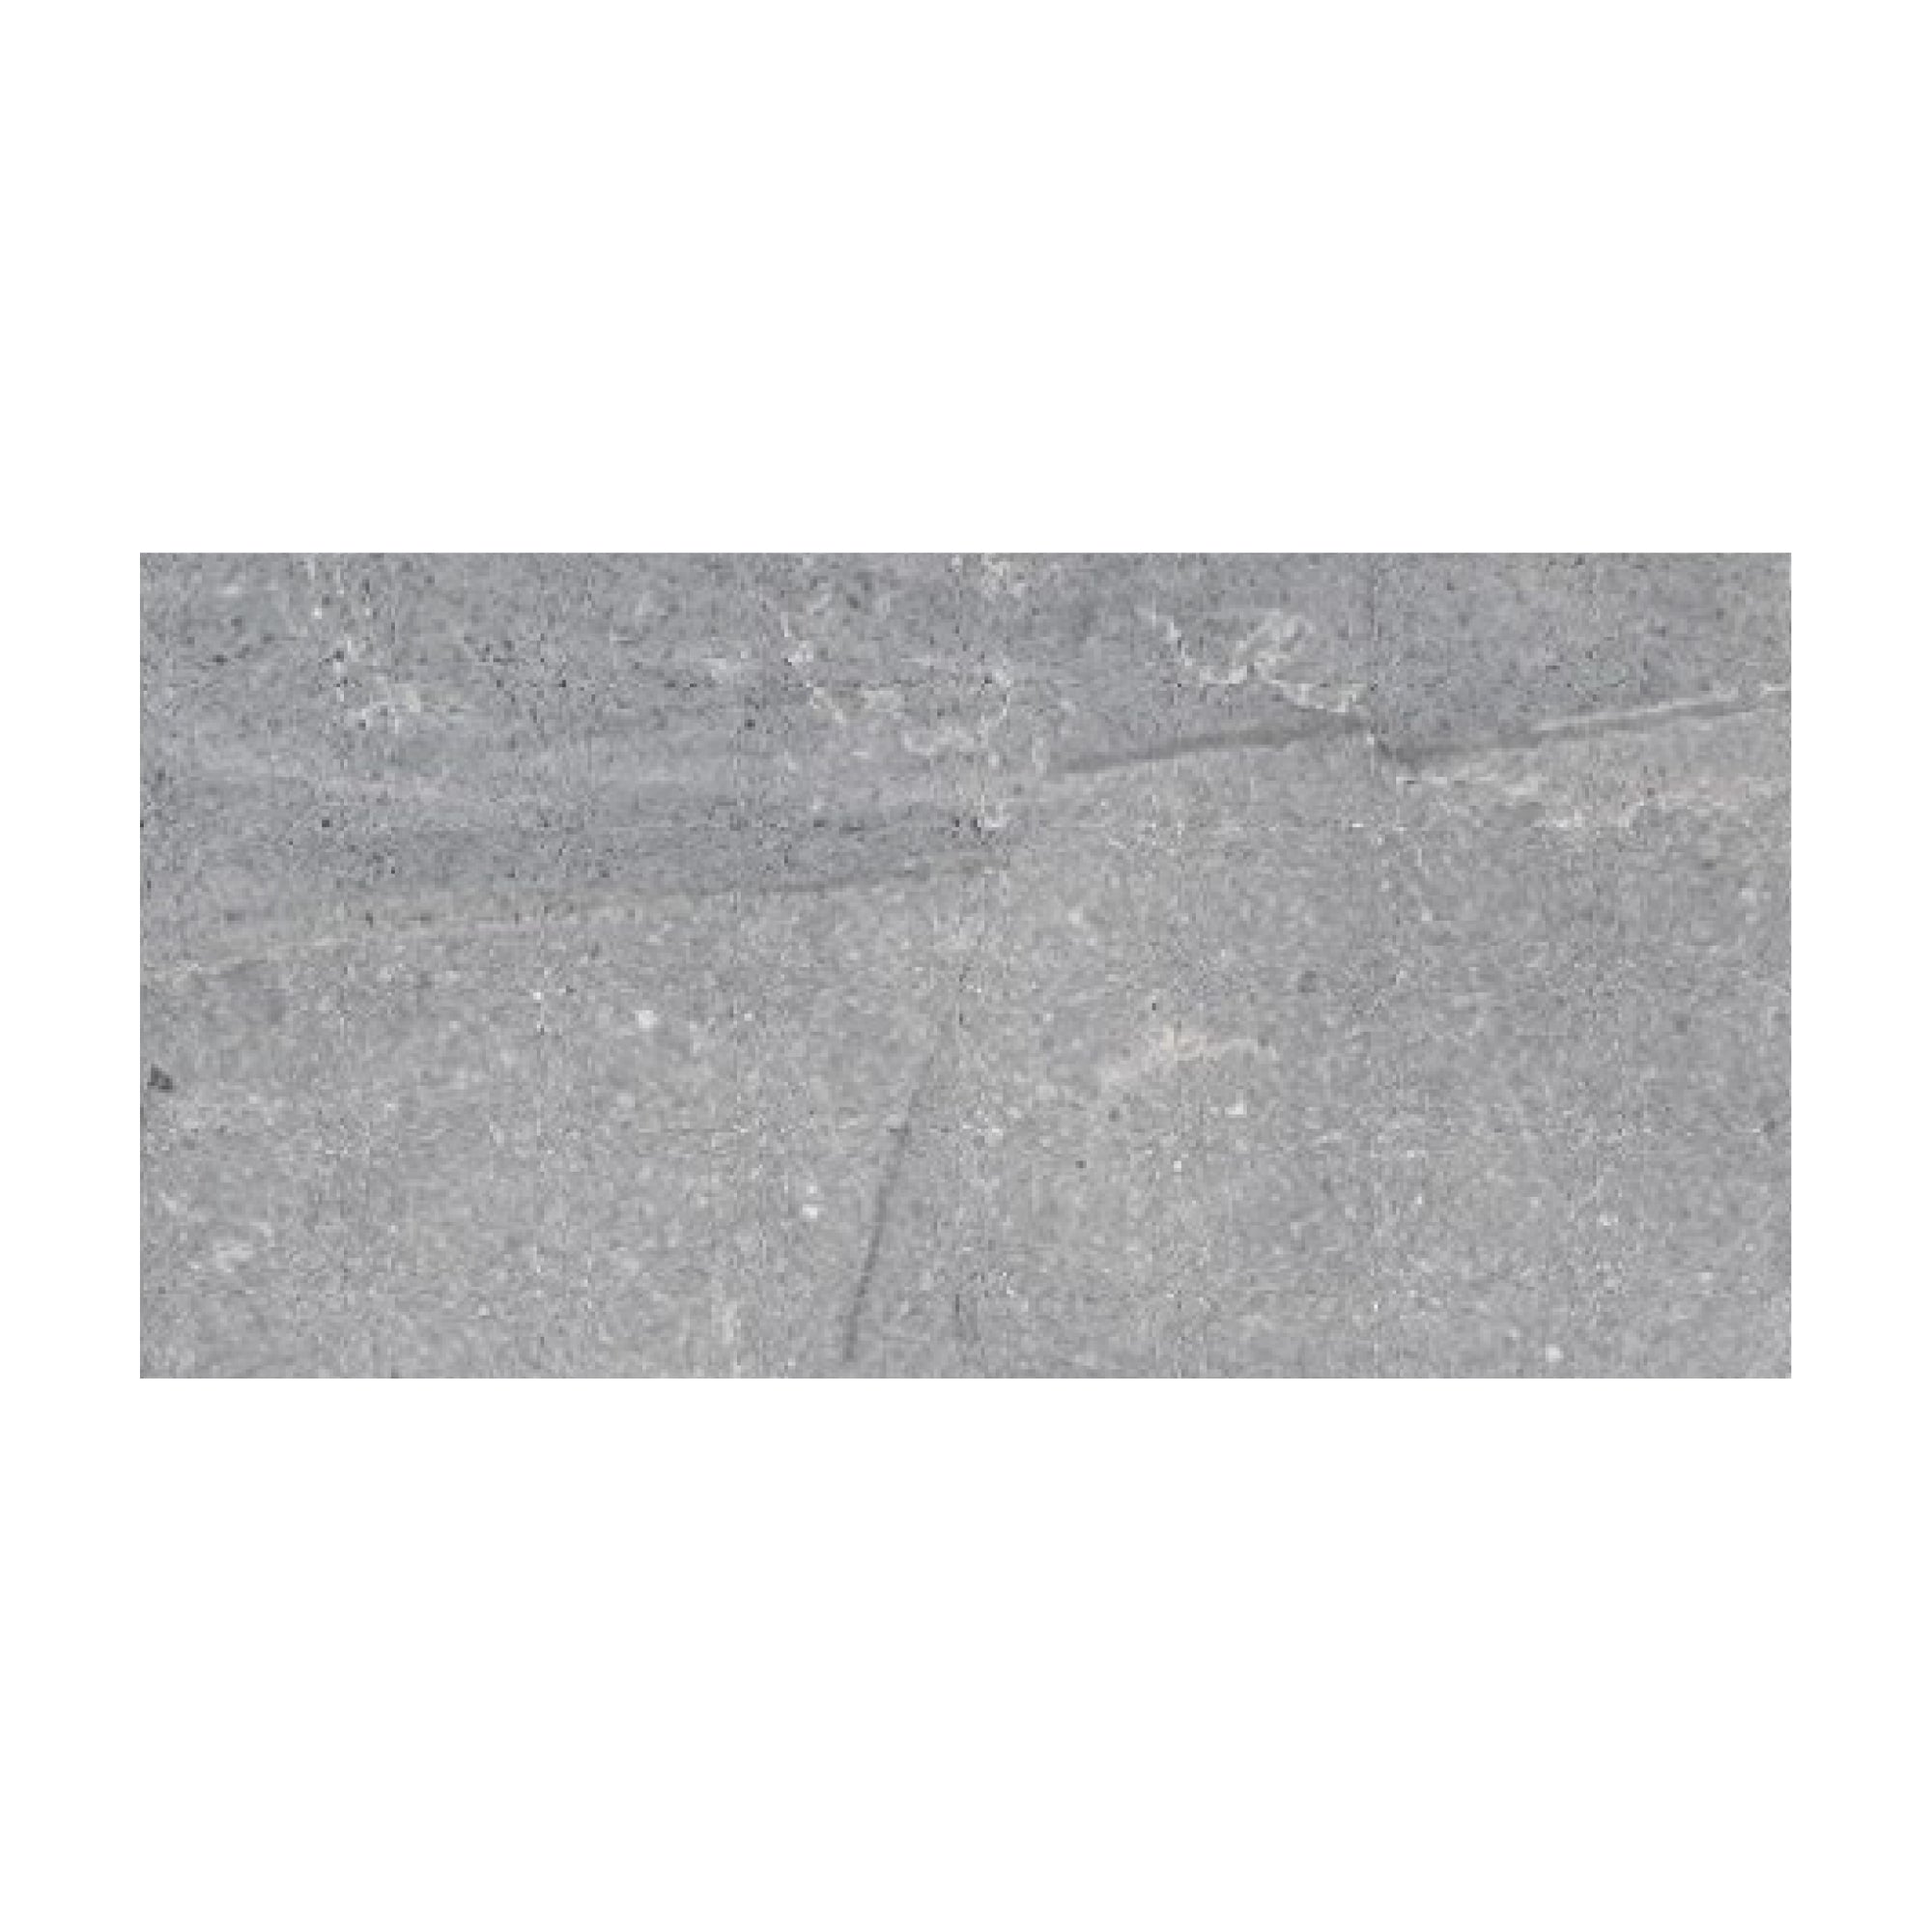 Gres - Sandstone Grey  External Antideslizante 30x60 Rectificado